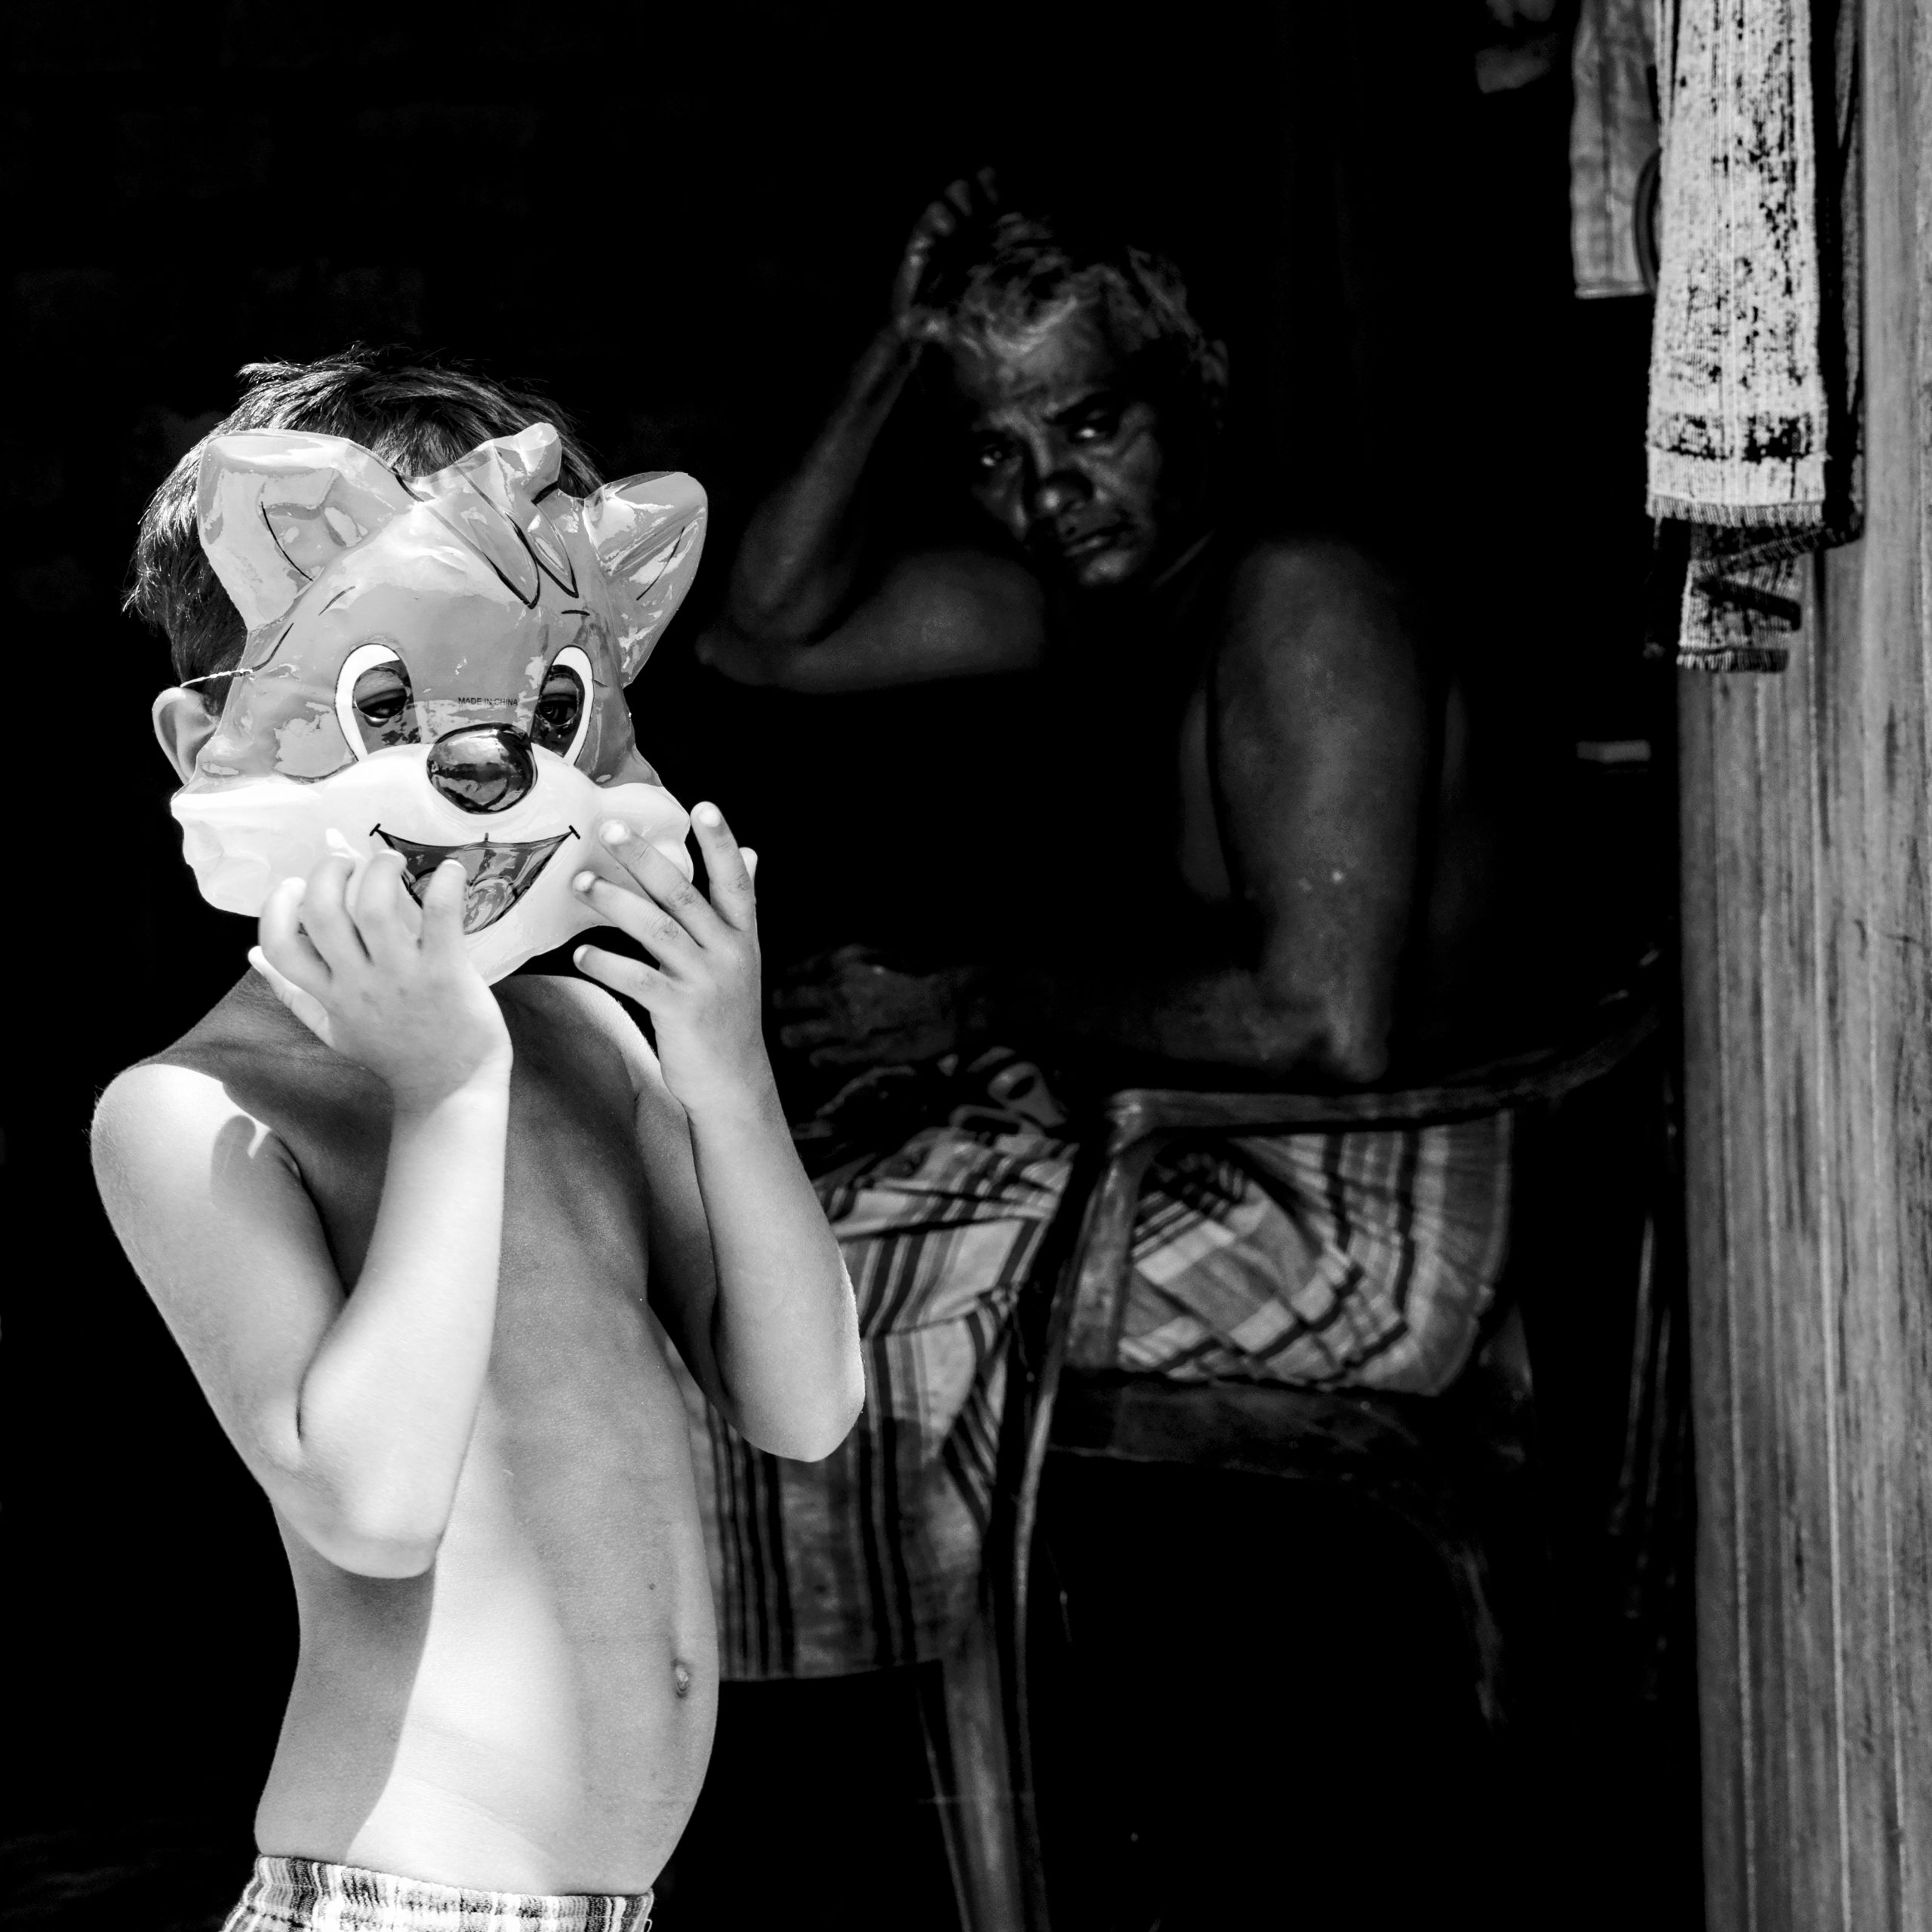 Sri Lanka. ©Graziano Perotti